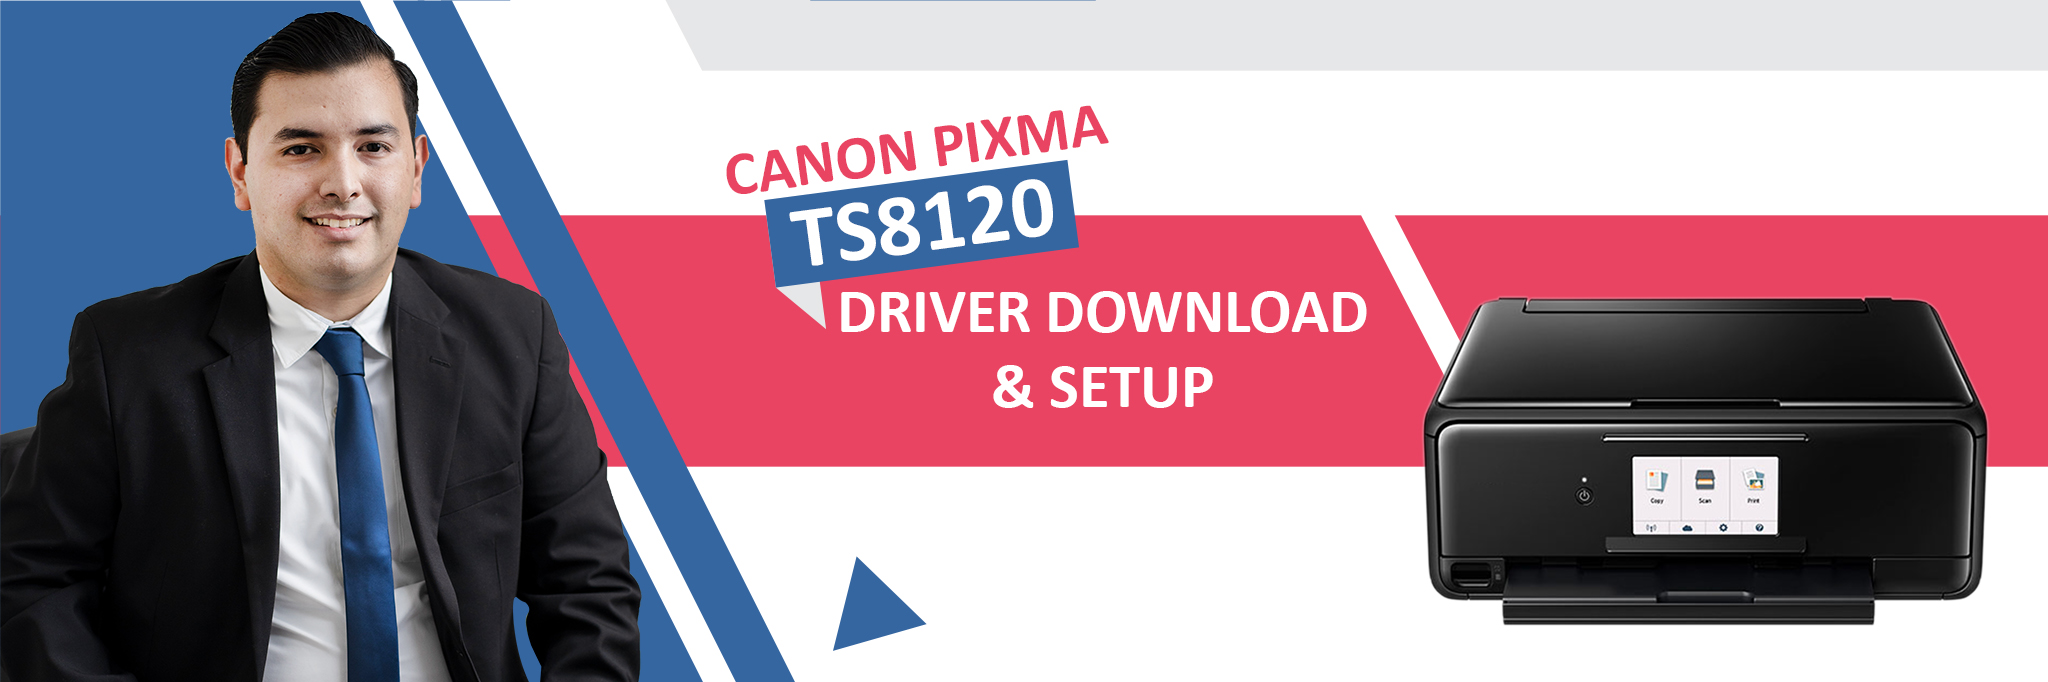 pixma mx490 software download